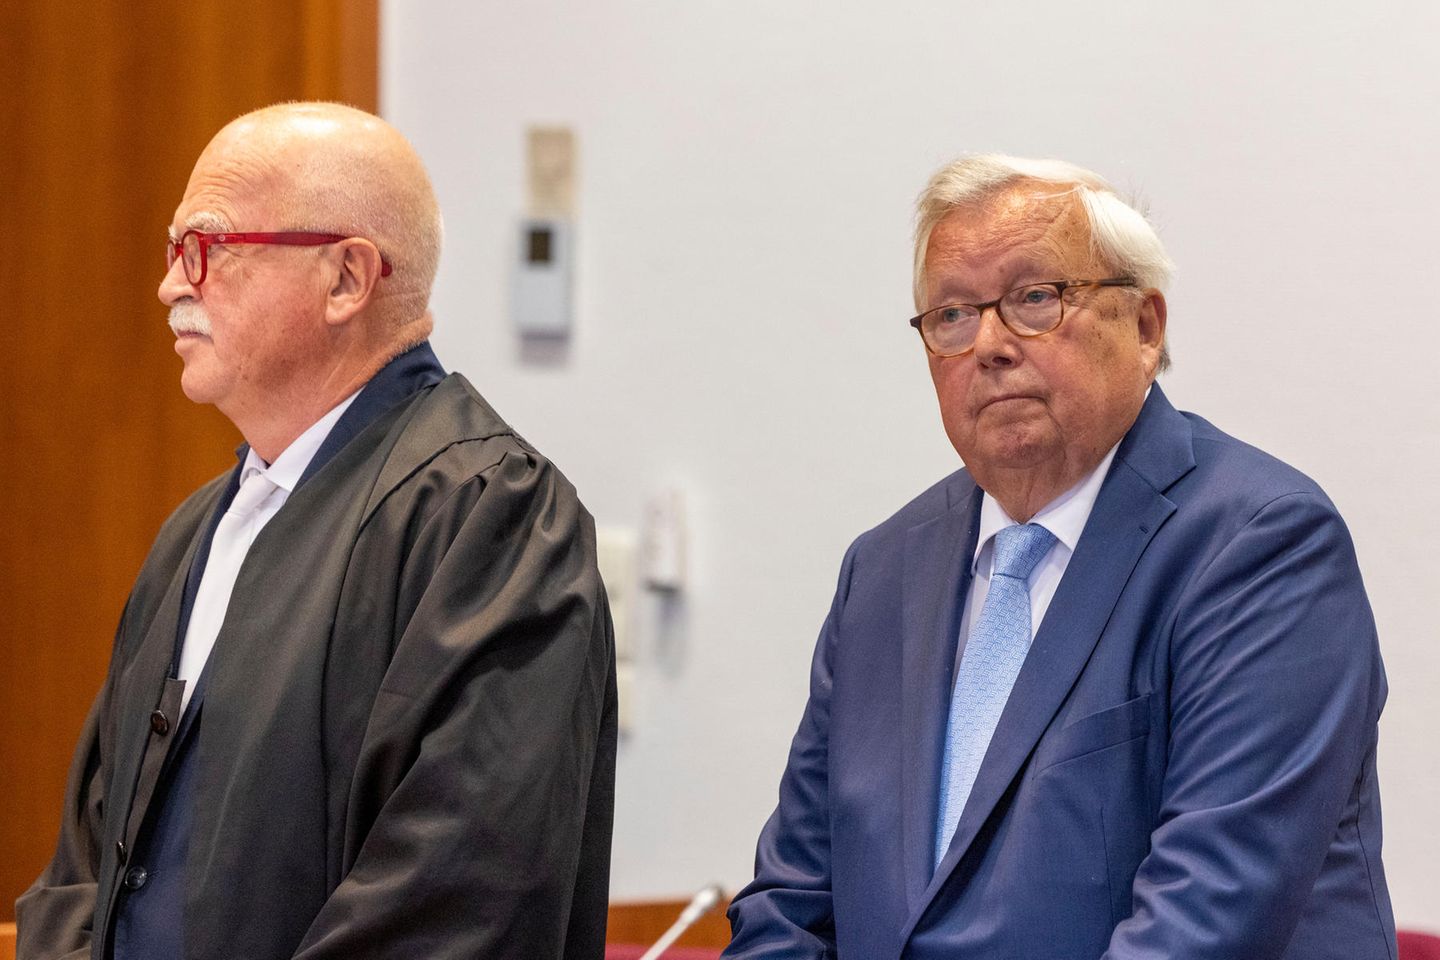 Der angeklagte Bankier Christian Olearius (r) steht neben seinem Anwalt Peter Gauweiler im Gerichtssaal des Bonner Landgerichts